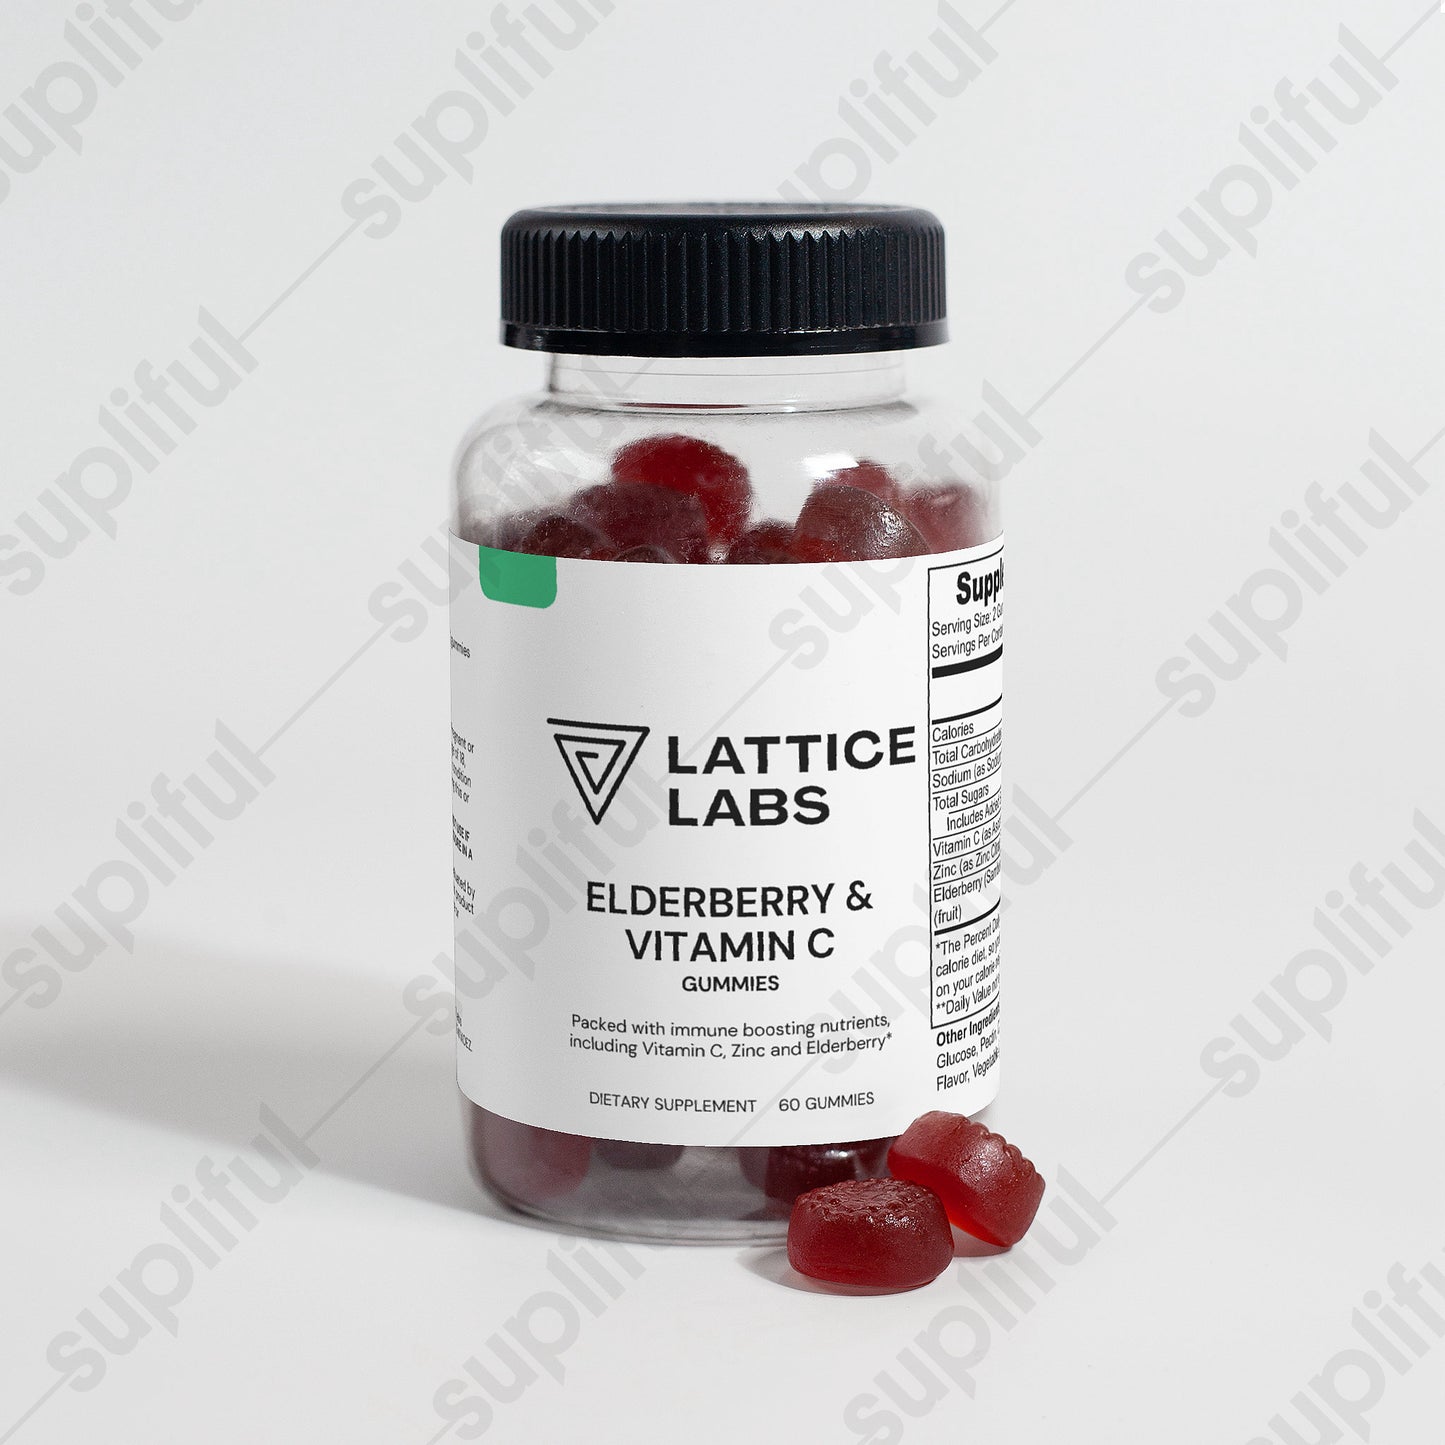 Lattice Labs Elderberry & Vitamin C Gummies